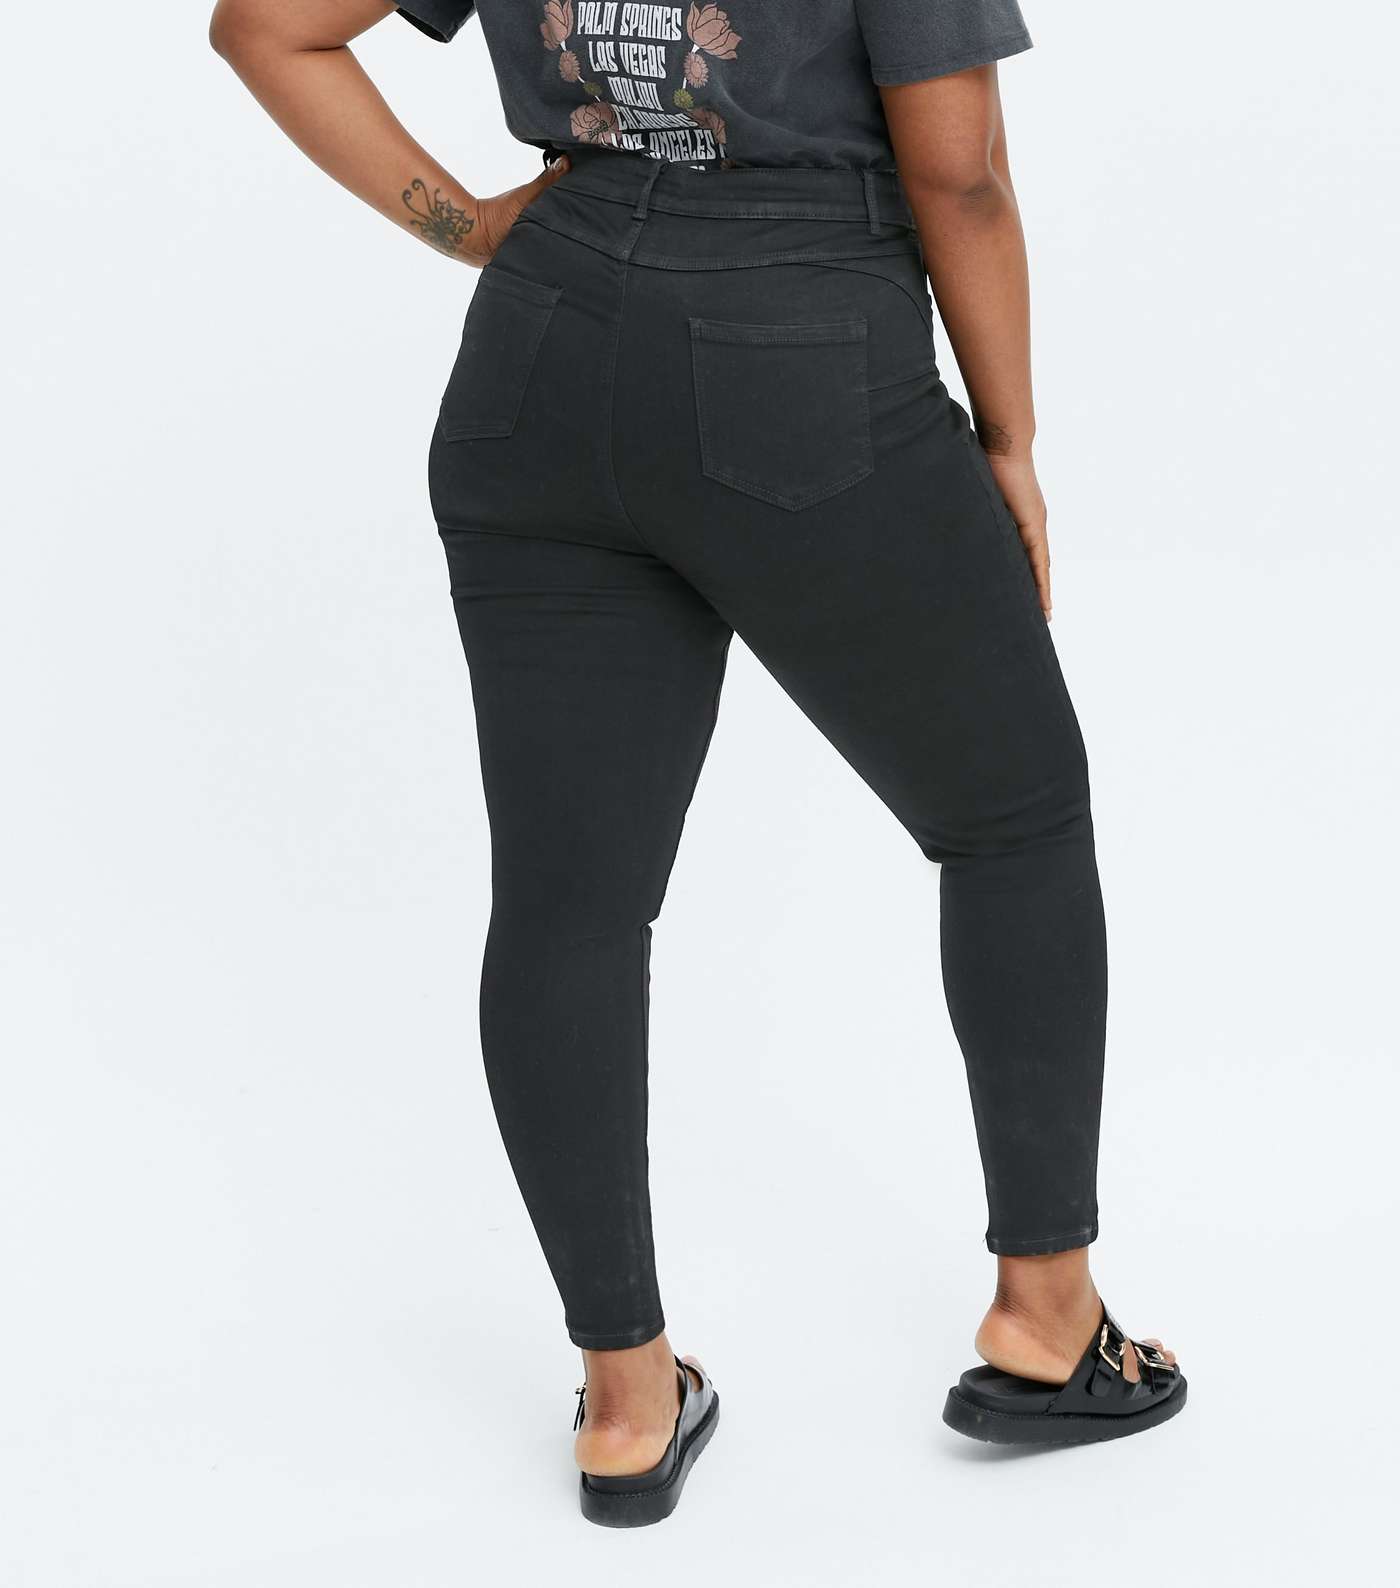 Curves Black Lift & Shape Jenna Skinny Jeans Image 4